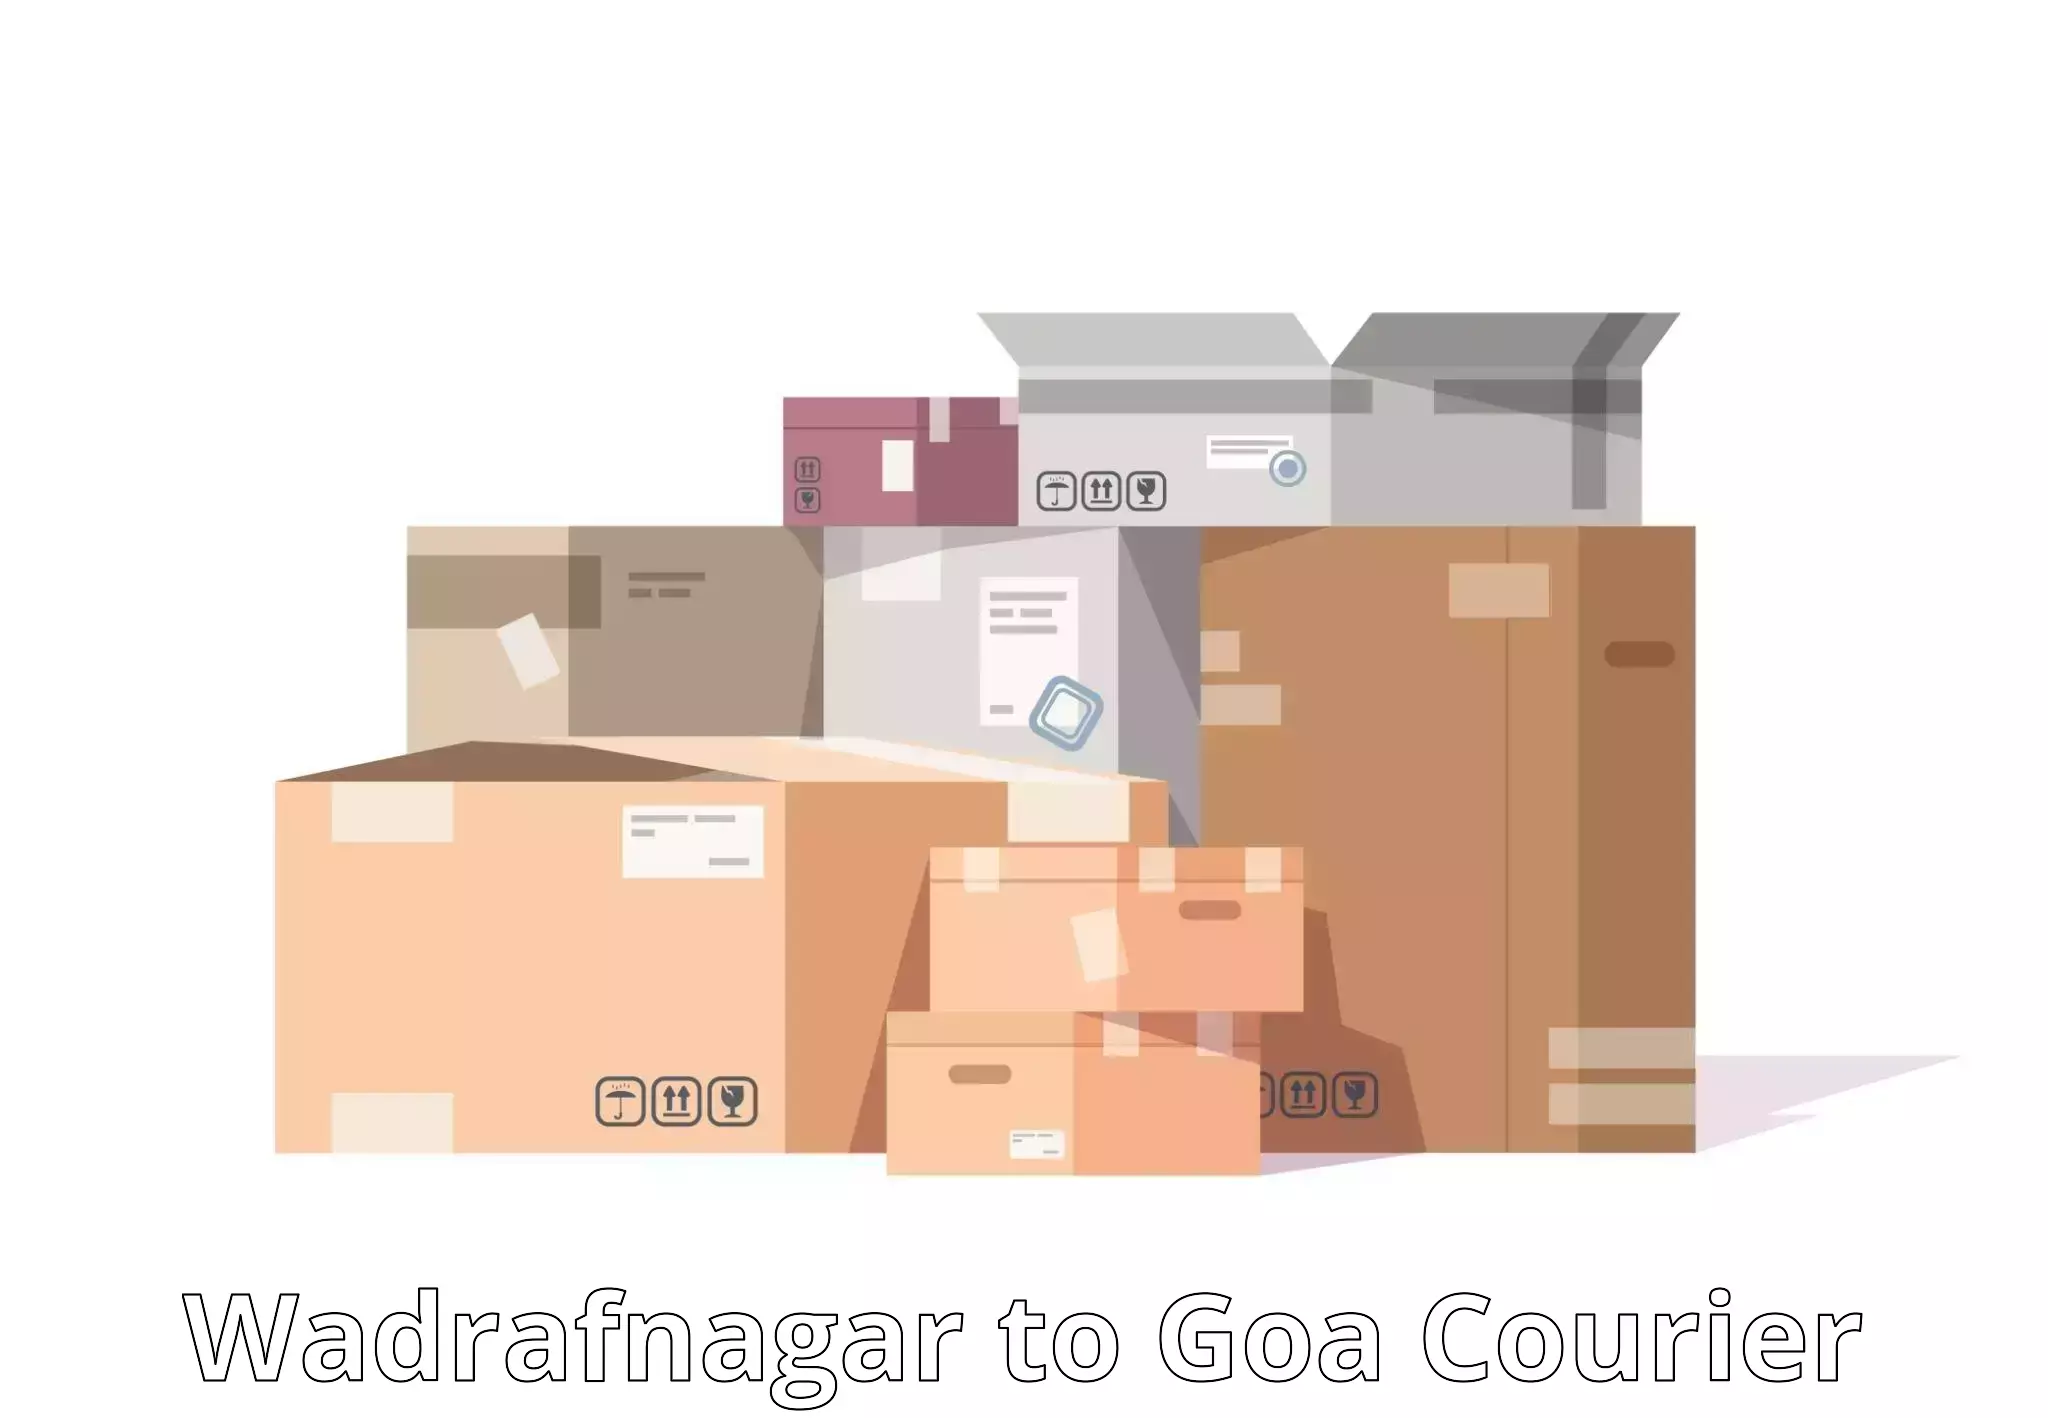 Customer-centric shipping Wadrafnagar to NIT Goa